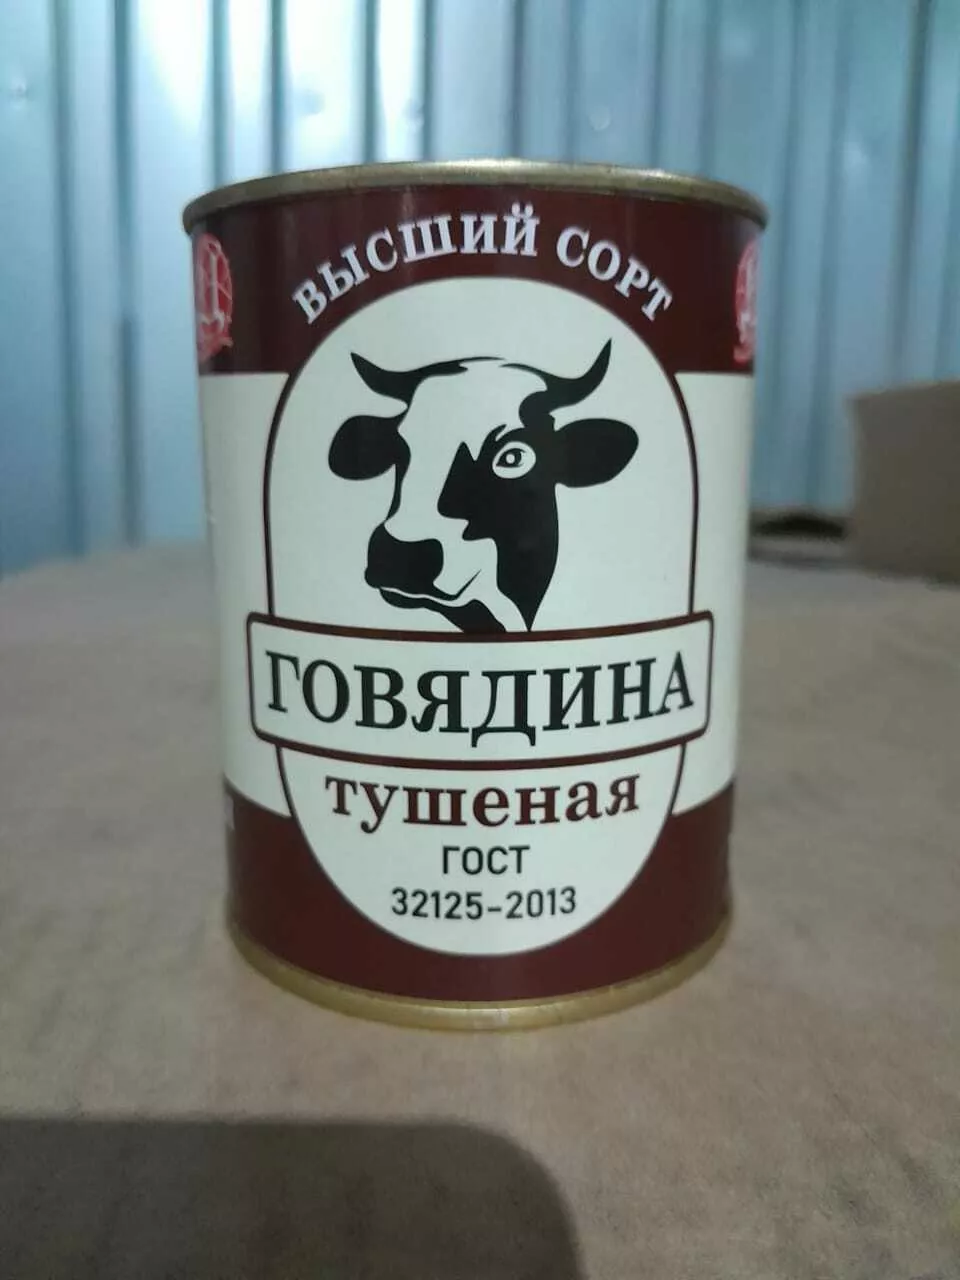 говяжья тушёнка ГОСТ в Барнауле и Алтайском крае